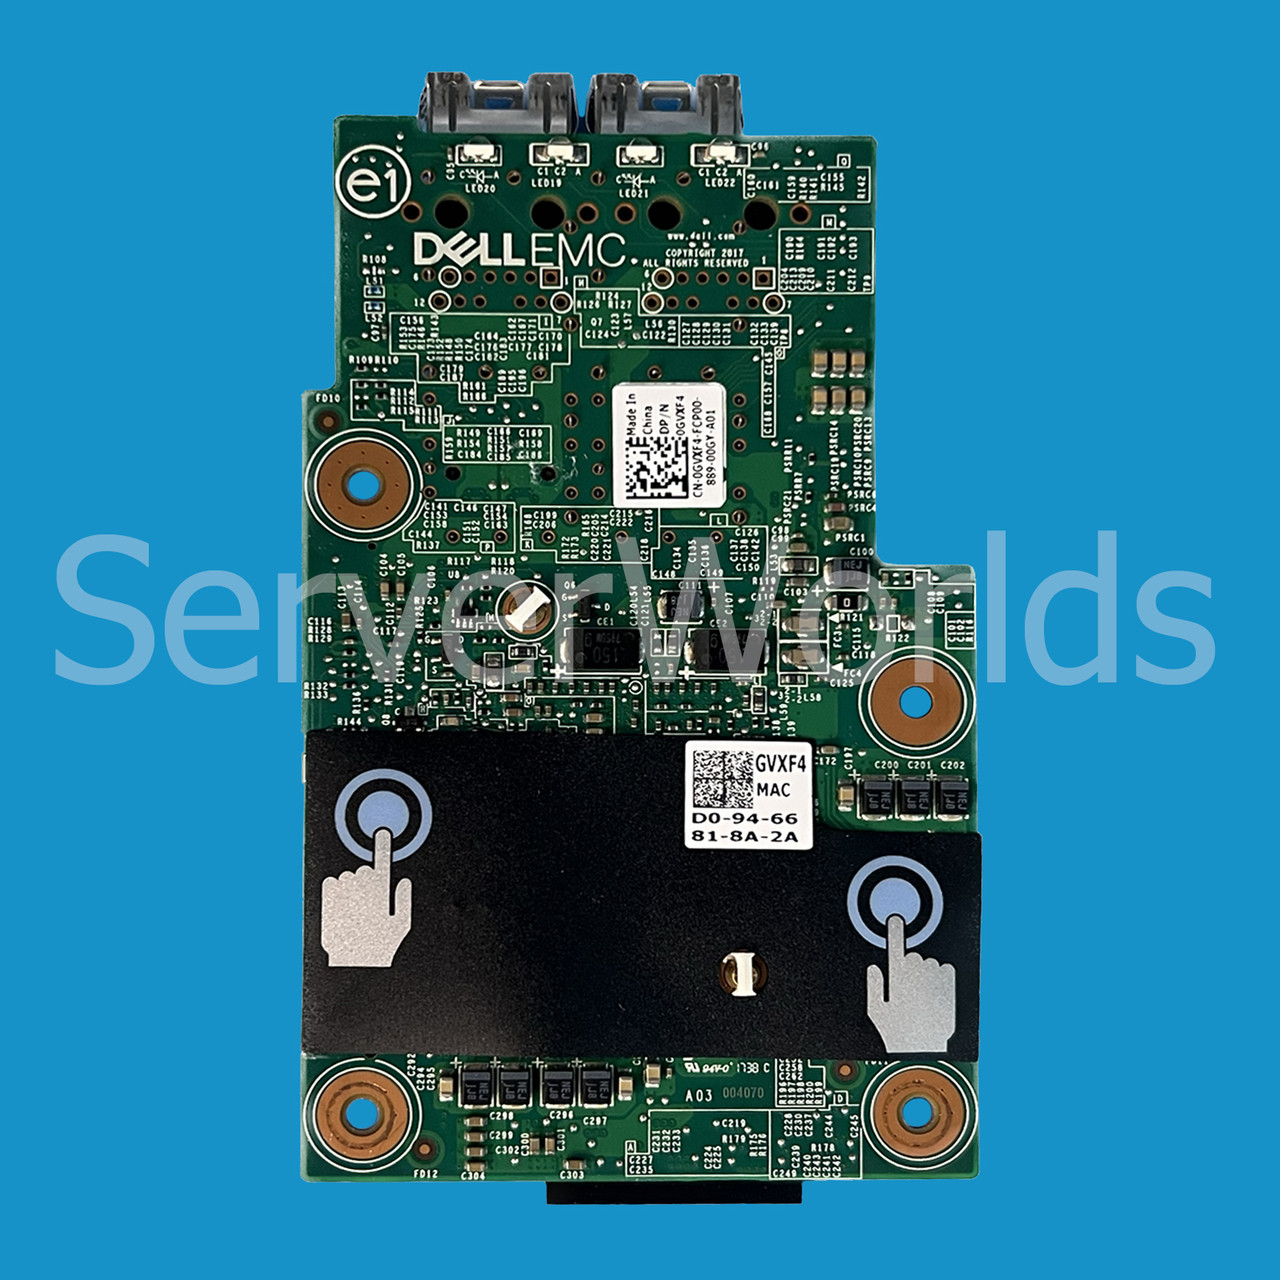 Dell GVXF4 Broadcom 57416 Dual Port 10GB SFP Mezz Card